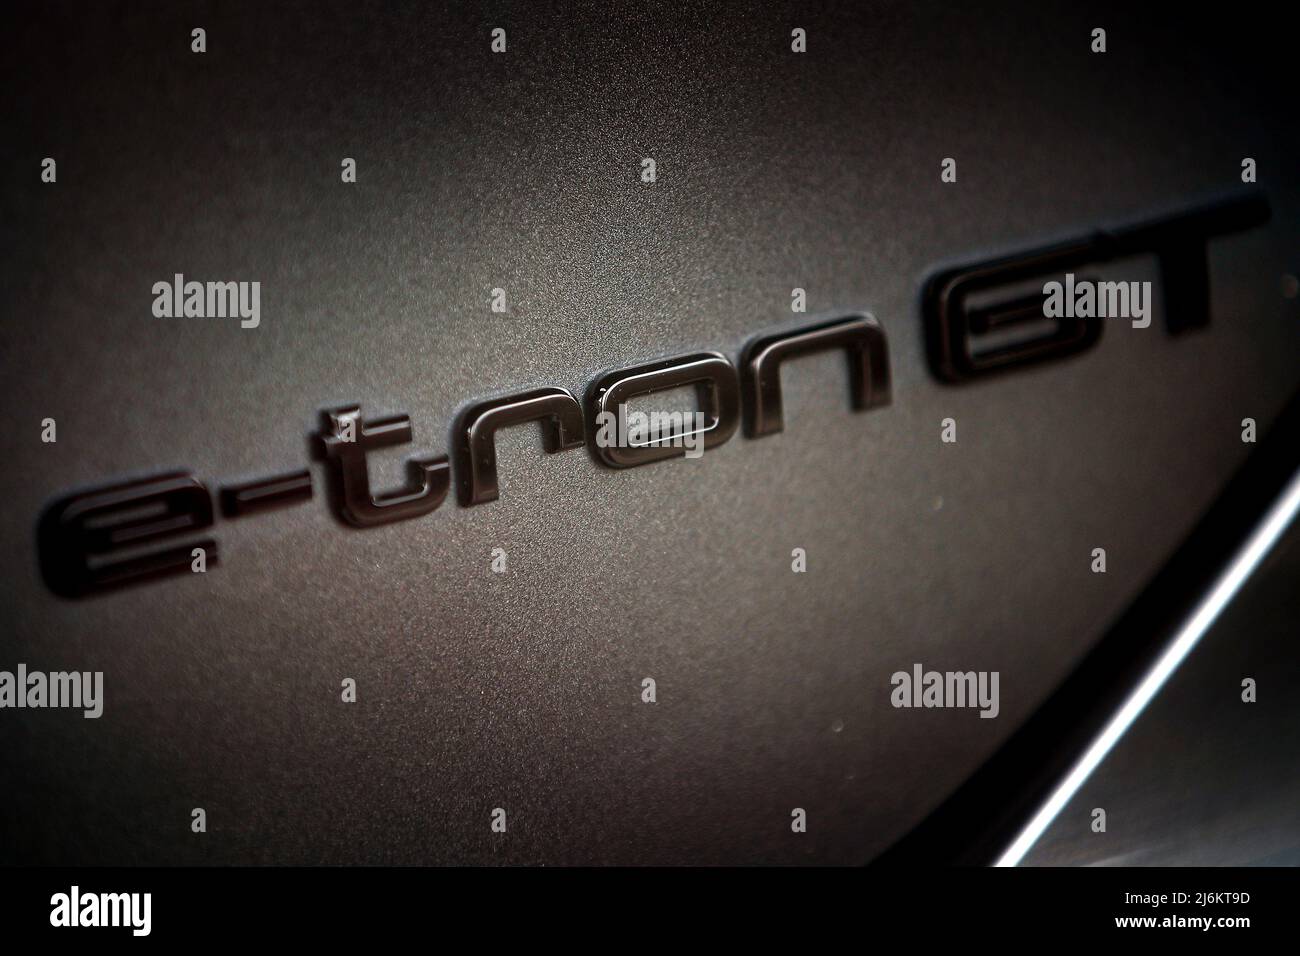 Logo e-tron GT visible sur une voiture Audi. Banque D'Images